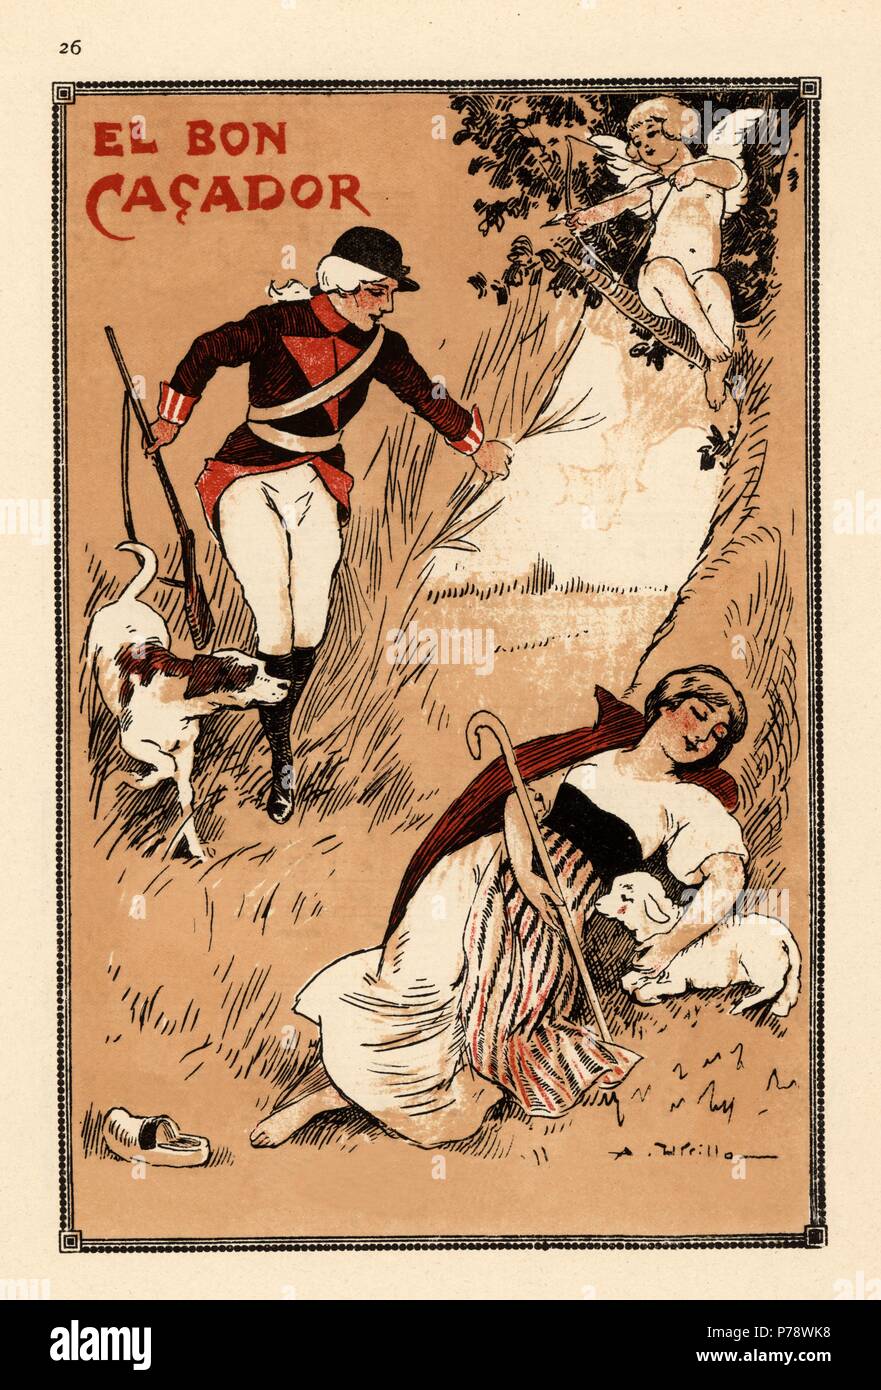 Catalunya. Partitura musicale. El Bon caçador, de La Cançó popolare un tret de mainada, de Doménec Mas mi Serracant. Año 1925. Foto Stock